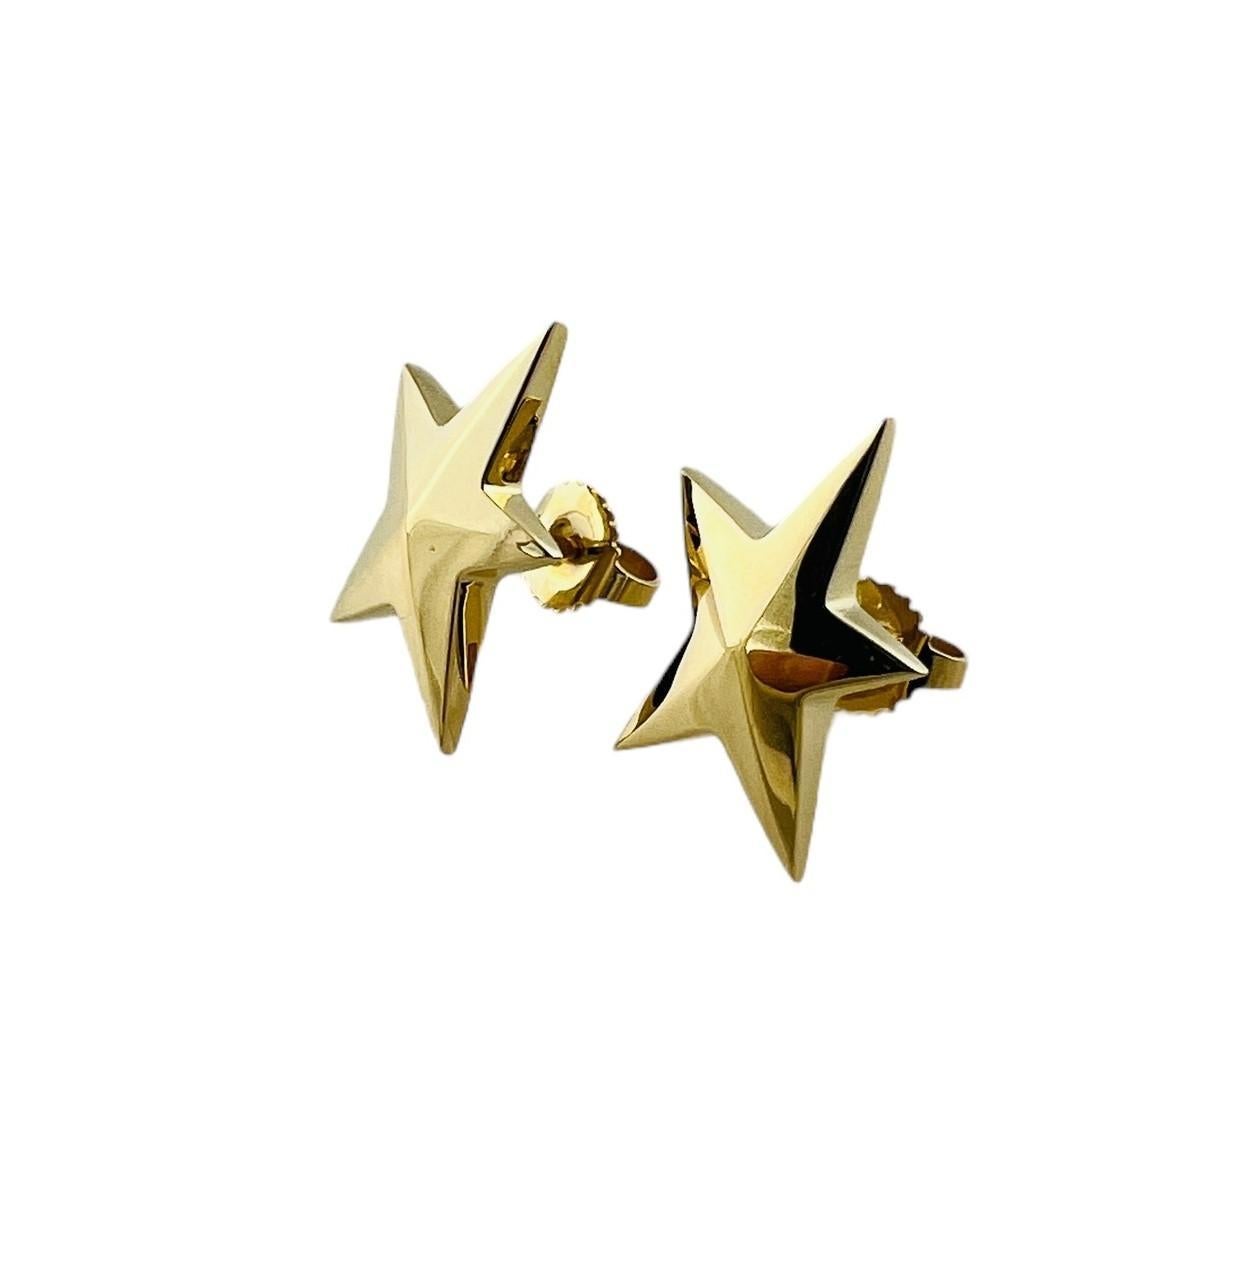 Boucles d'oreilles étoile en or jaune 18K de Tiffany & Co. Vintage 

vers les années 1980

Ces boucles d'oreilles abstraites en forme d'étoile en or de Tiffany & Co. sont serties en or jaune 18 carats.

Les boucles d'oreilles ont un diamètre